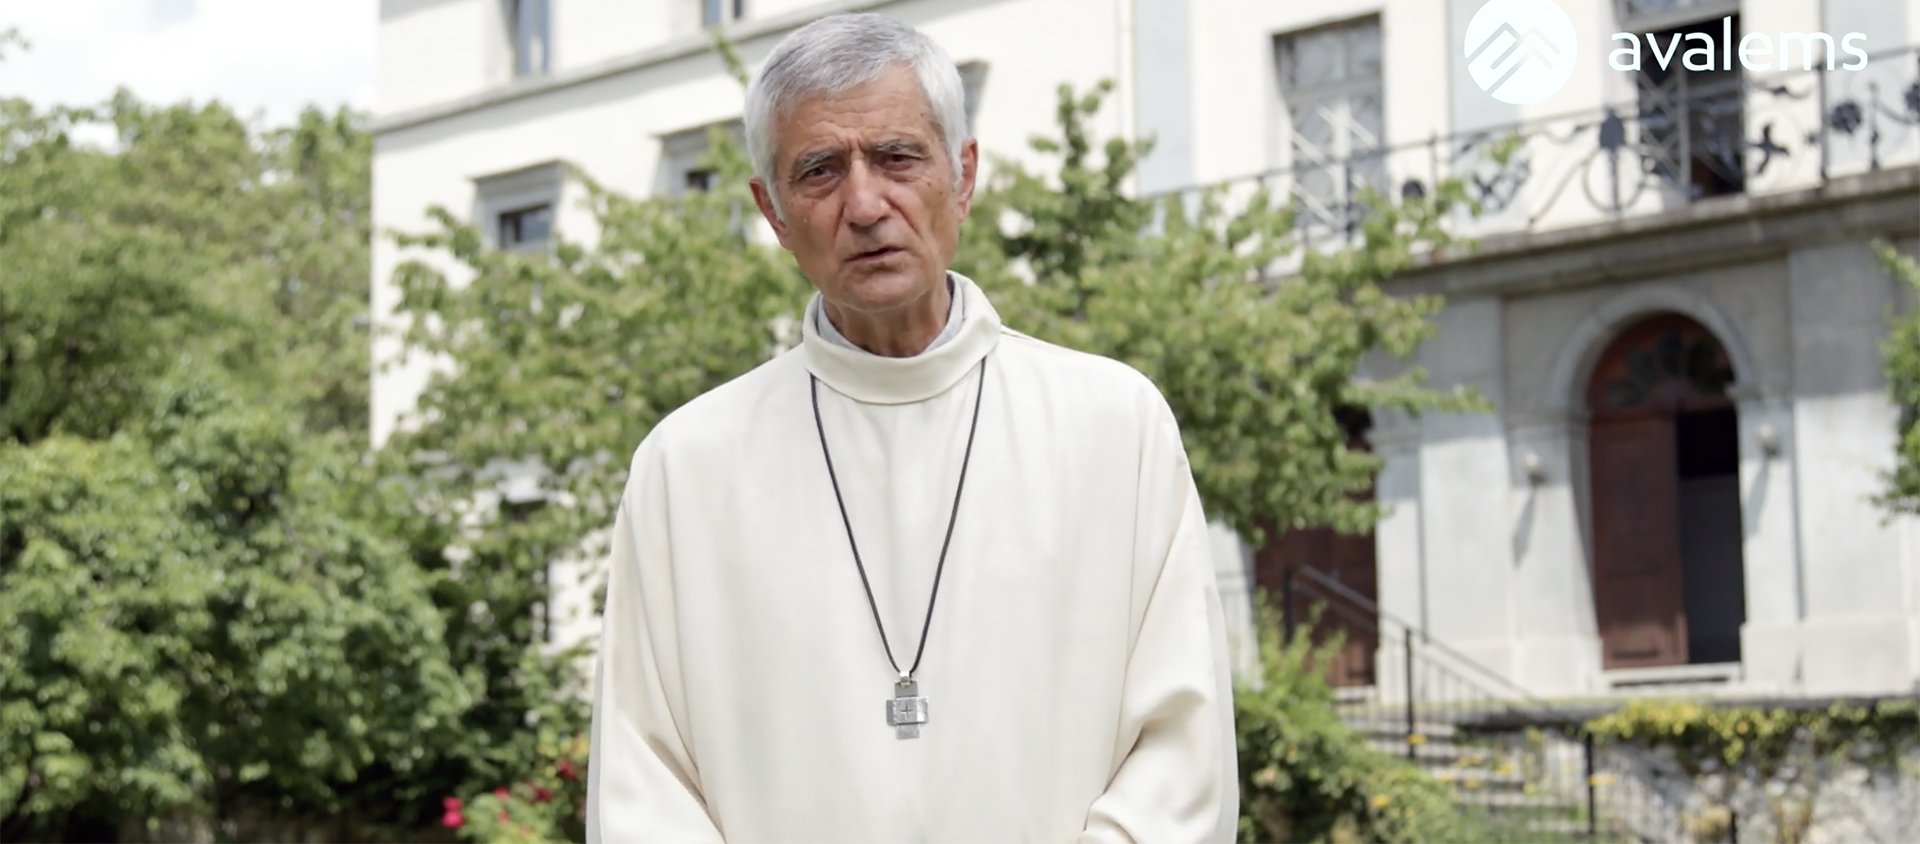 Mgr Jean-Marie Lovey, évêque de Sion, apporte son témoignage dans la vidéo de l'AVALEMS | capture d'écran avalems.ch